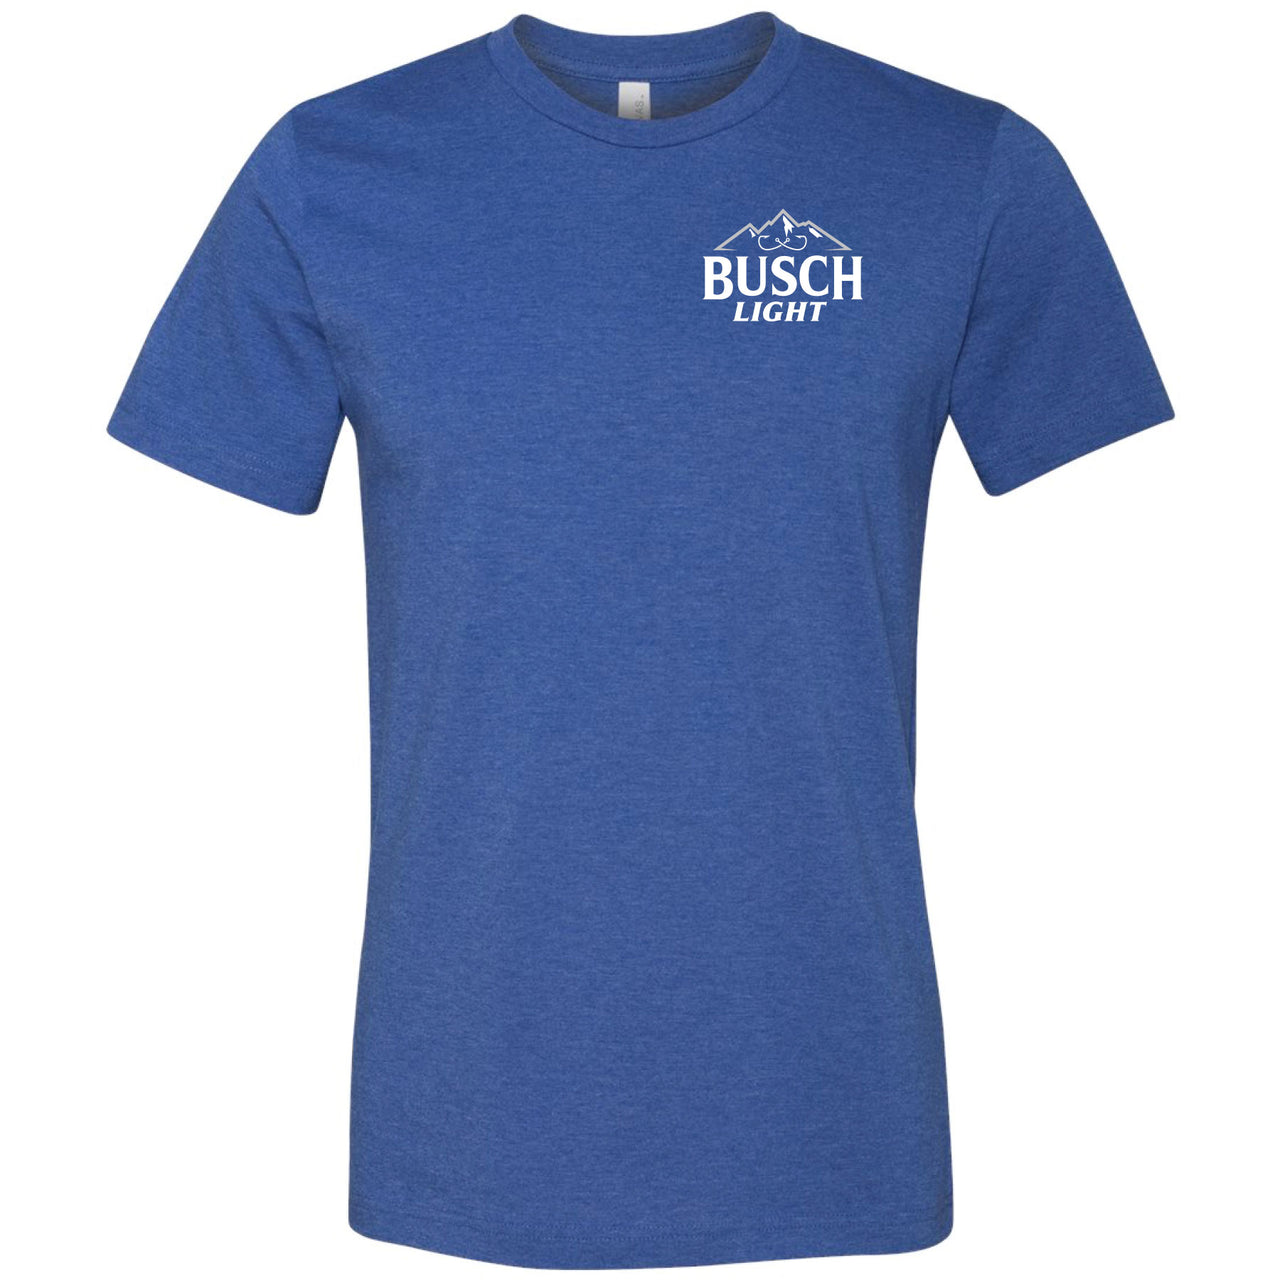 Buckle Junkfood Busch Light Gone Fishing T-Shirt